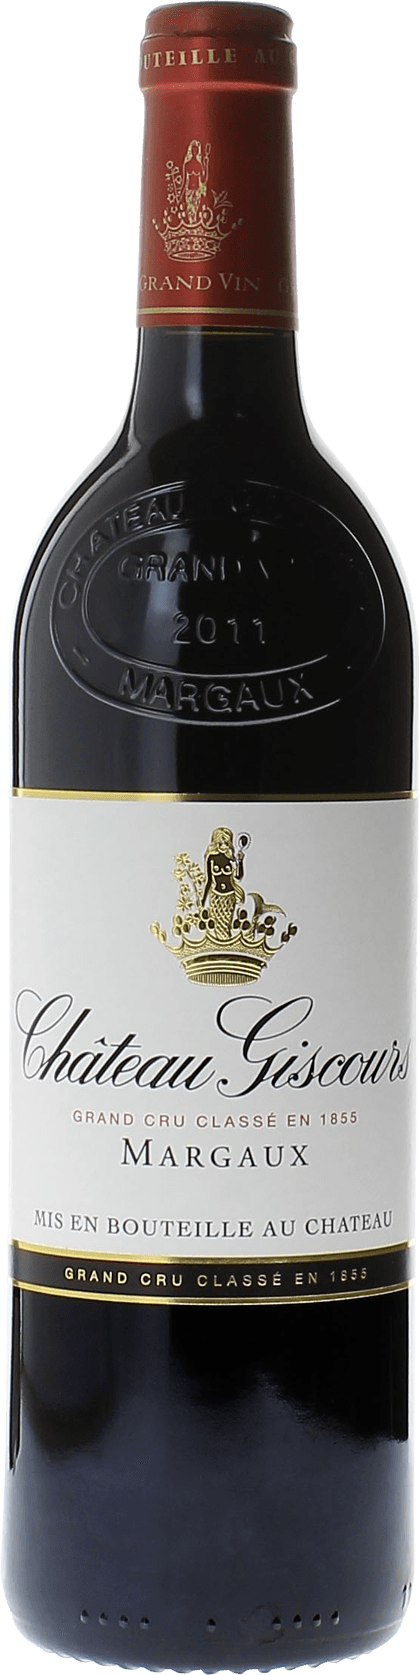 Giscours 2003 3me Grand cru class Margaux, Bordeaux rouge